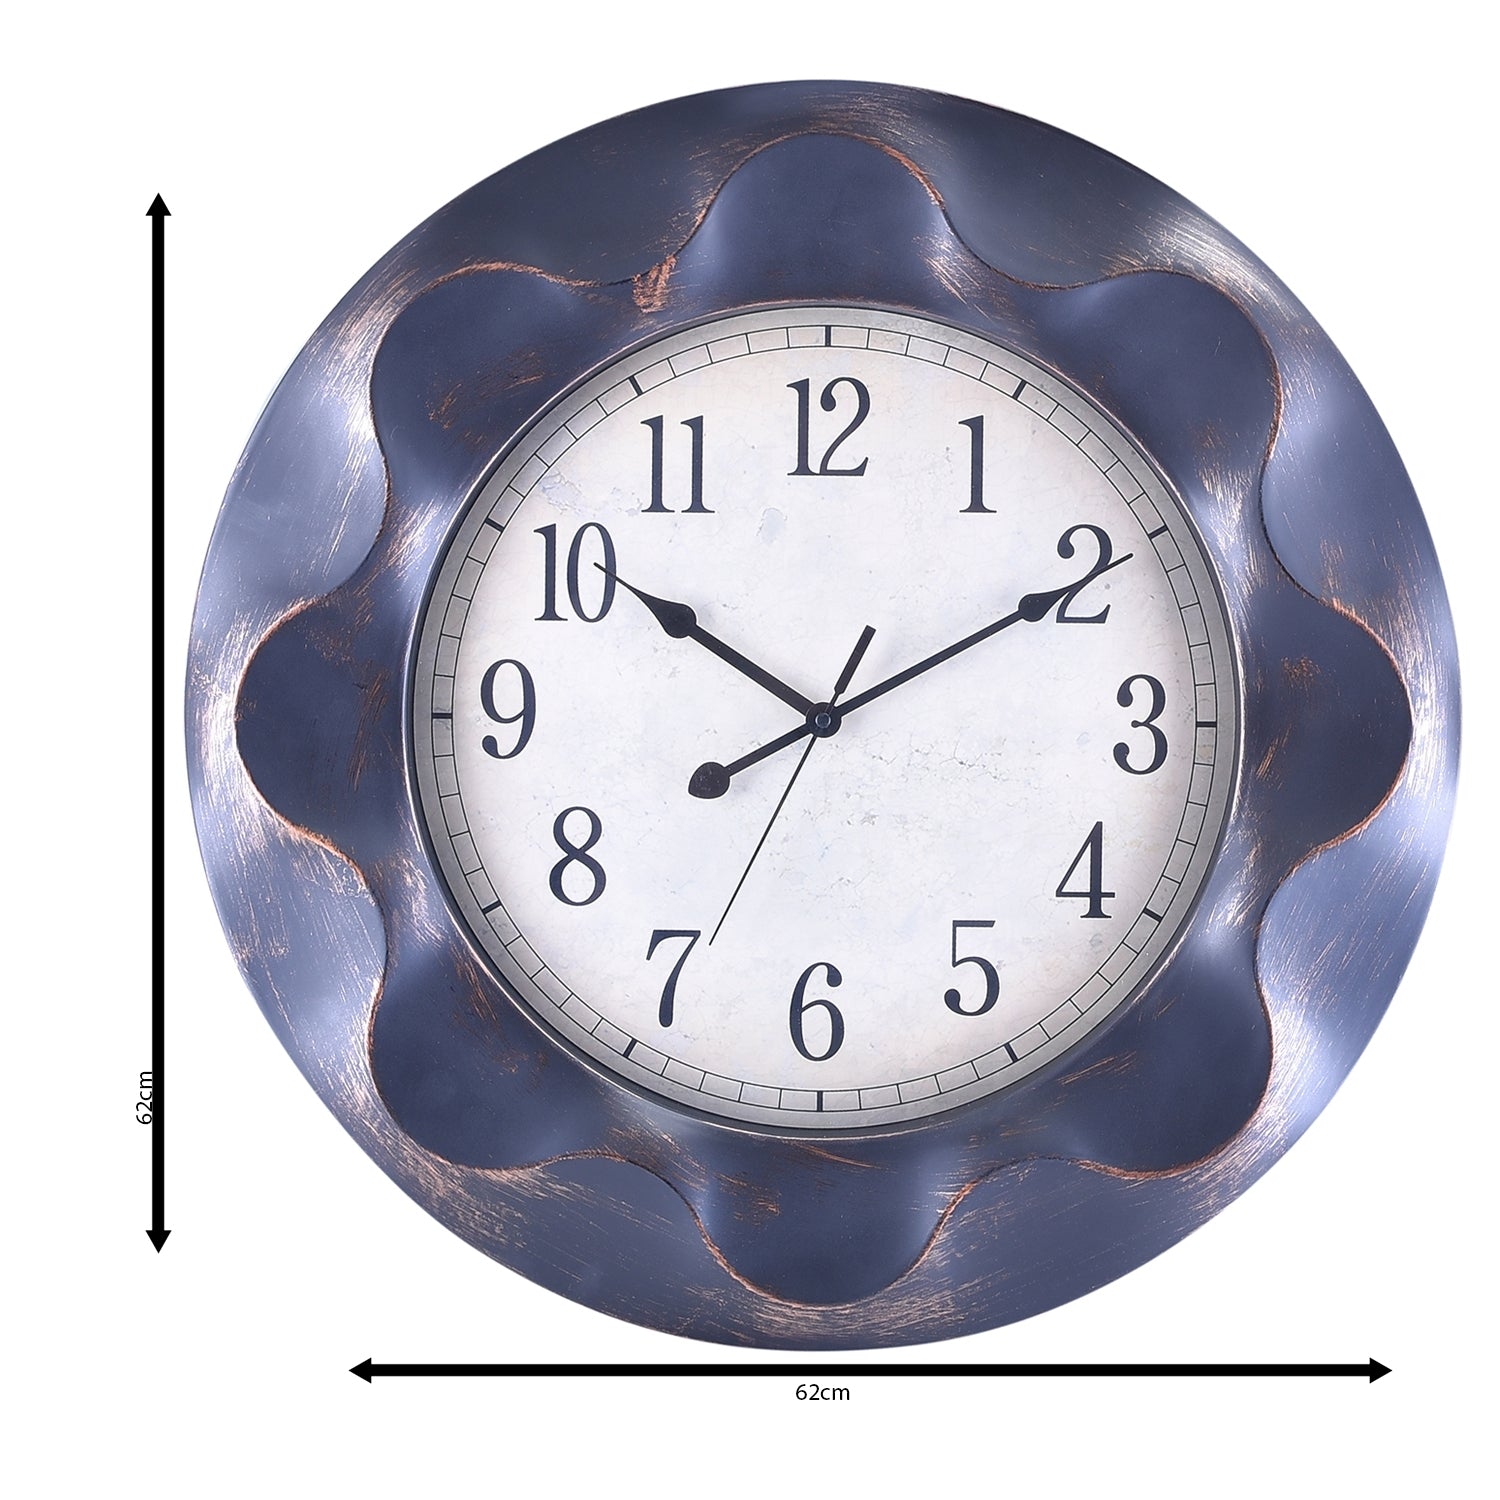 Premium Antique Design Analog Wall Clock 45